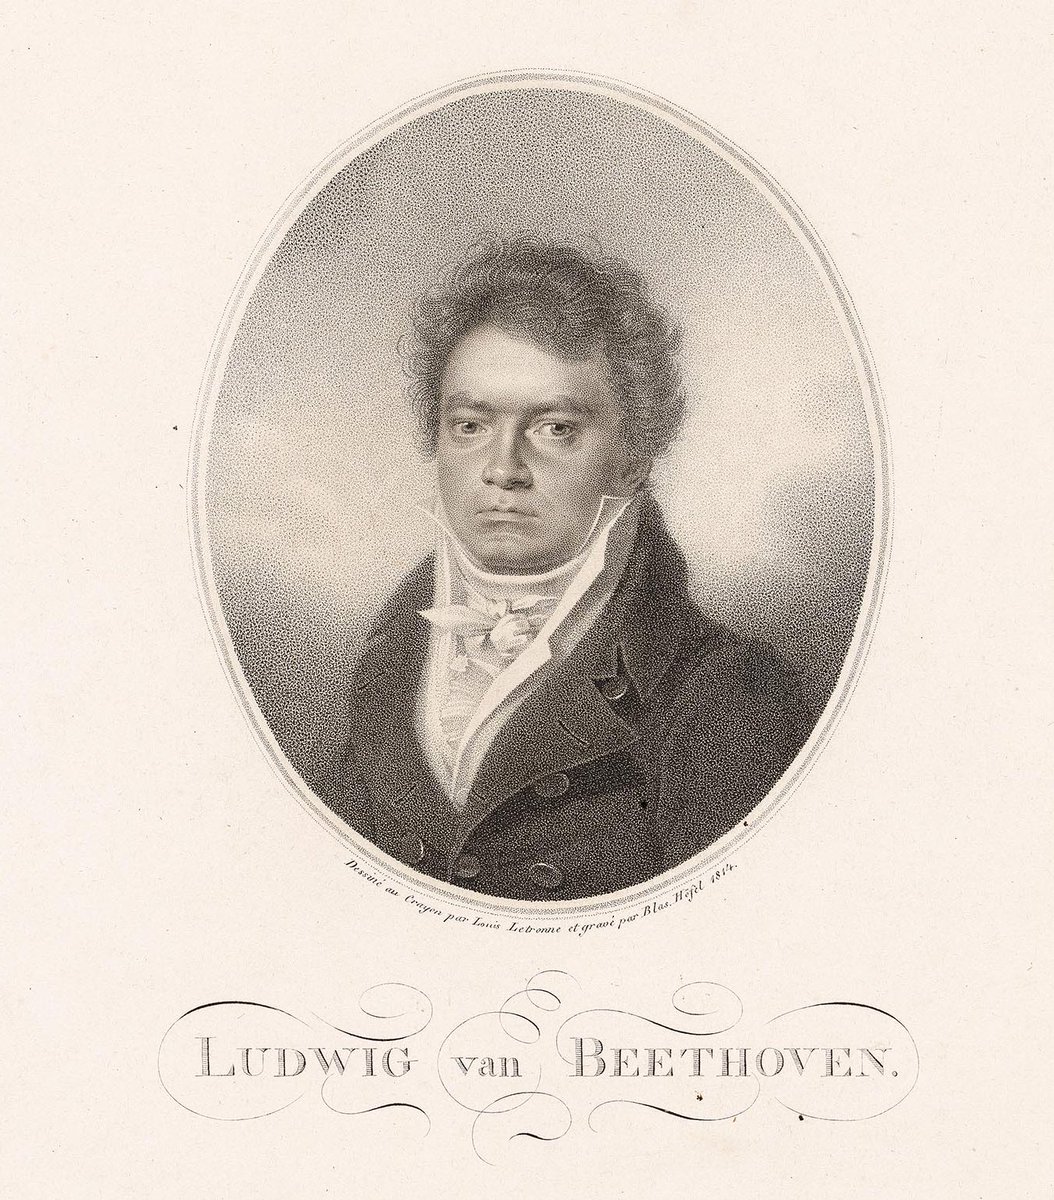 🎼Hoy se cumplen 2⃣0⃣0⃣ años del estreno en Viena de una obra esencial en la historia de la música: la «Novena» de Beethoven, su última sinfonía completa y una de las partituras más grandiosas, influyentes y admiradas del repertorio; un símbolo internacional de paz y hermandad.🎶